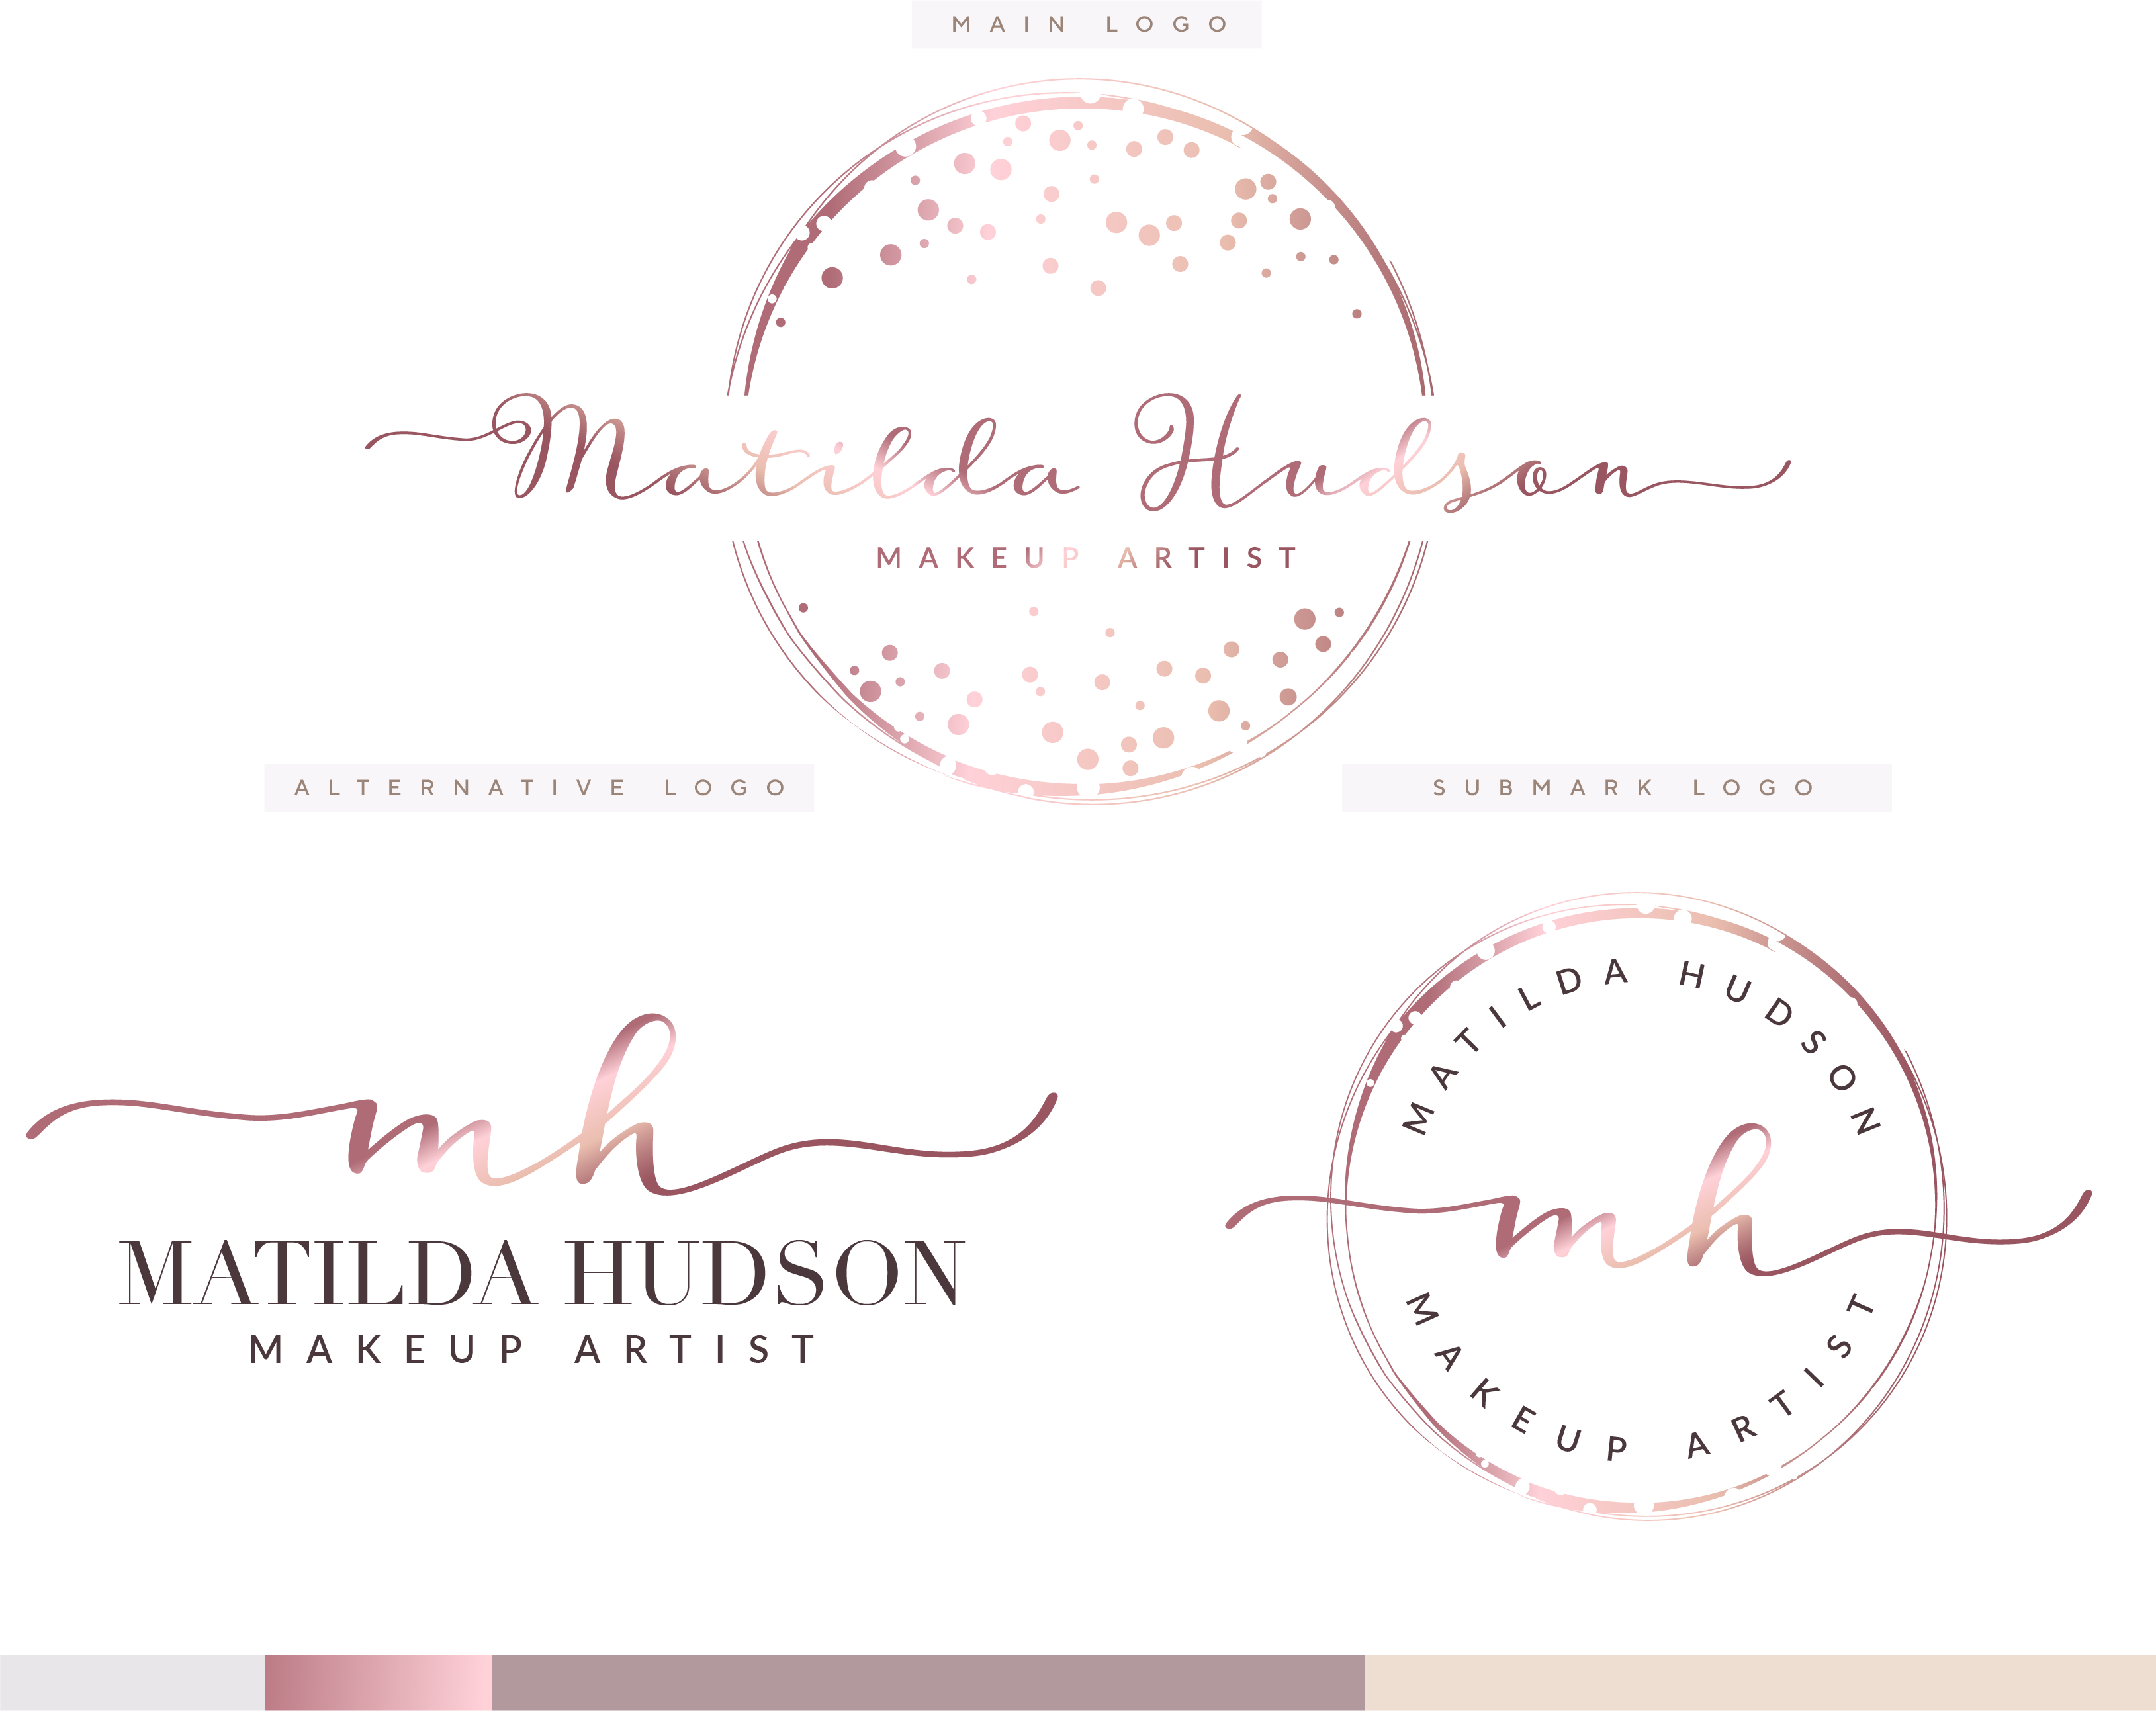 Matilda Hudson kit